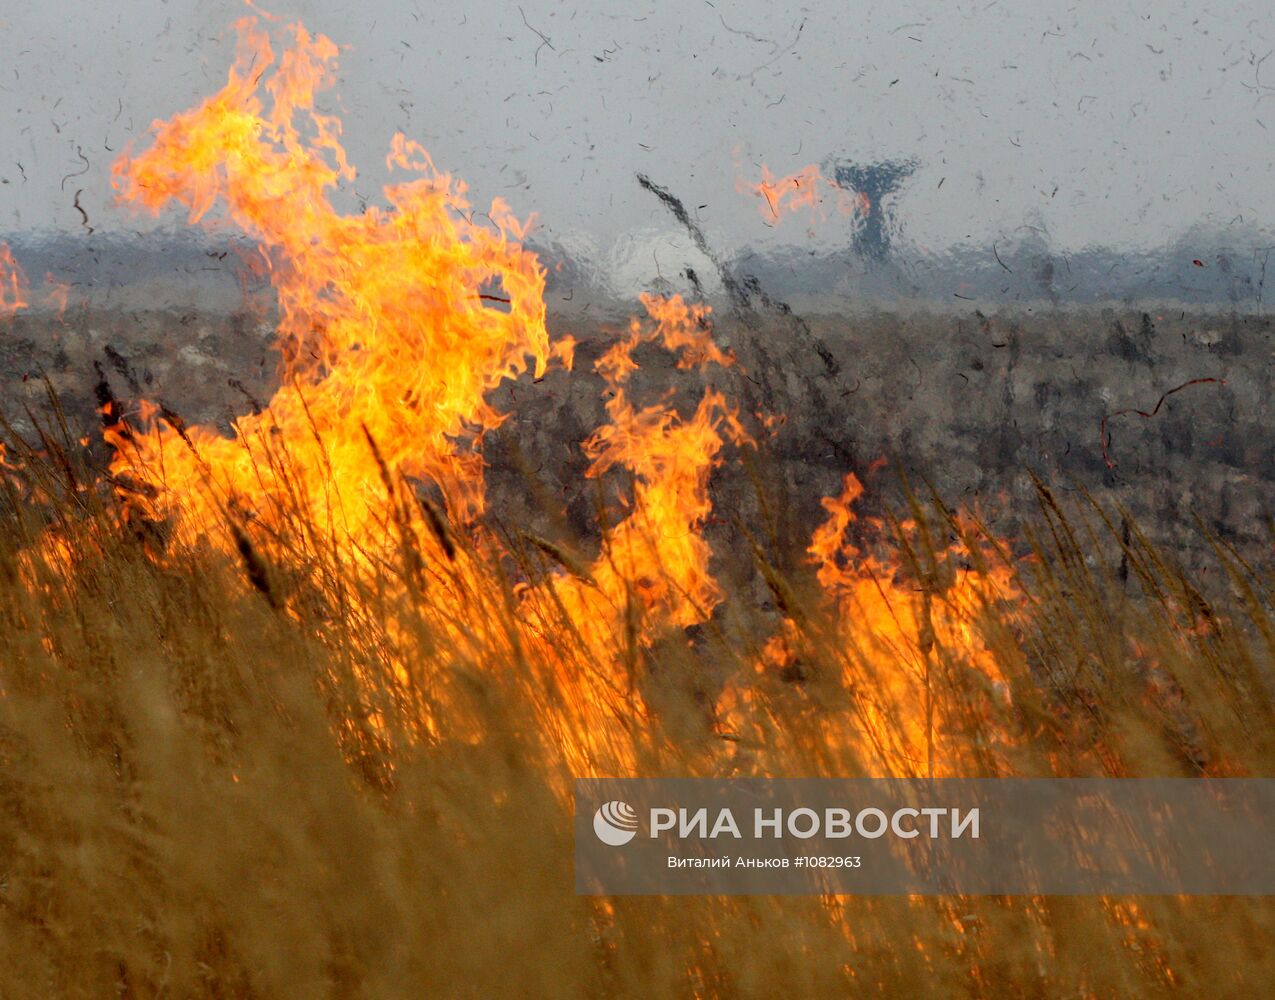 Горит пал. Горит трава в Приморье. Сибирь горит Спасите. Фотография горящего c-17.